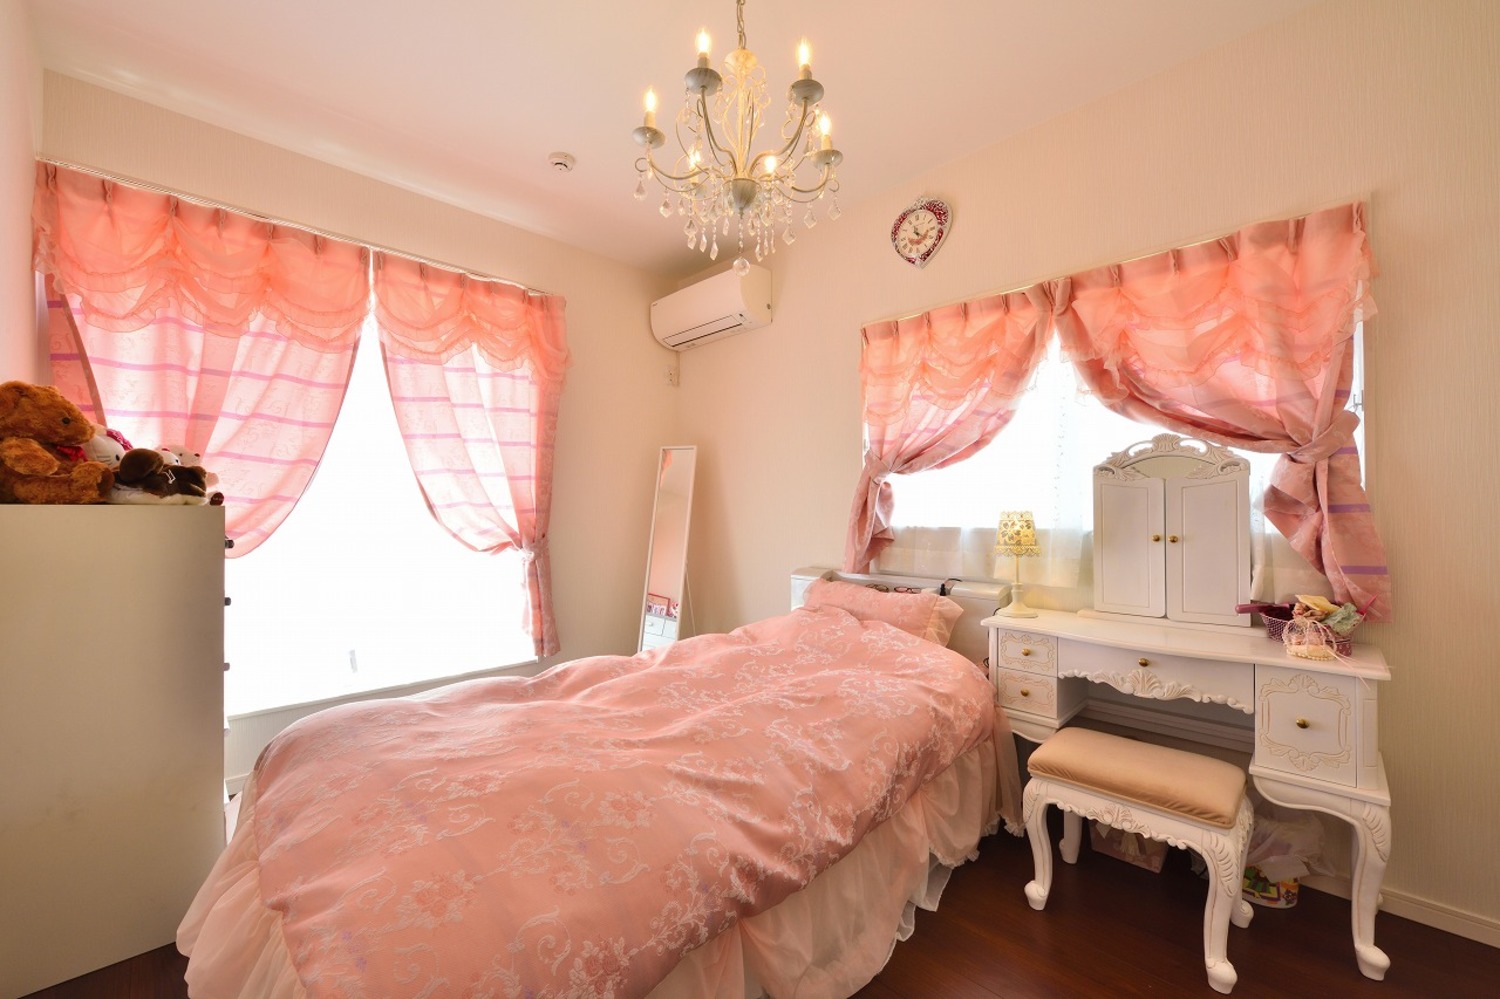 ホワイトとピンクを基調としたお姫様のような居室